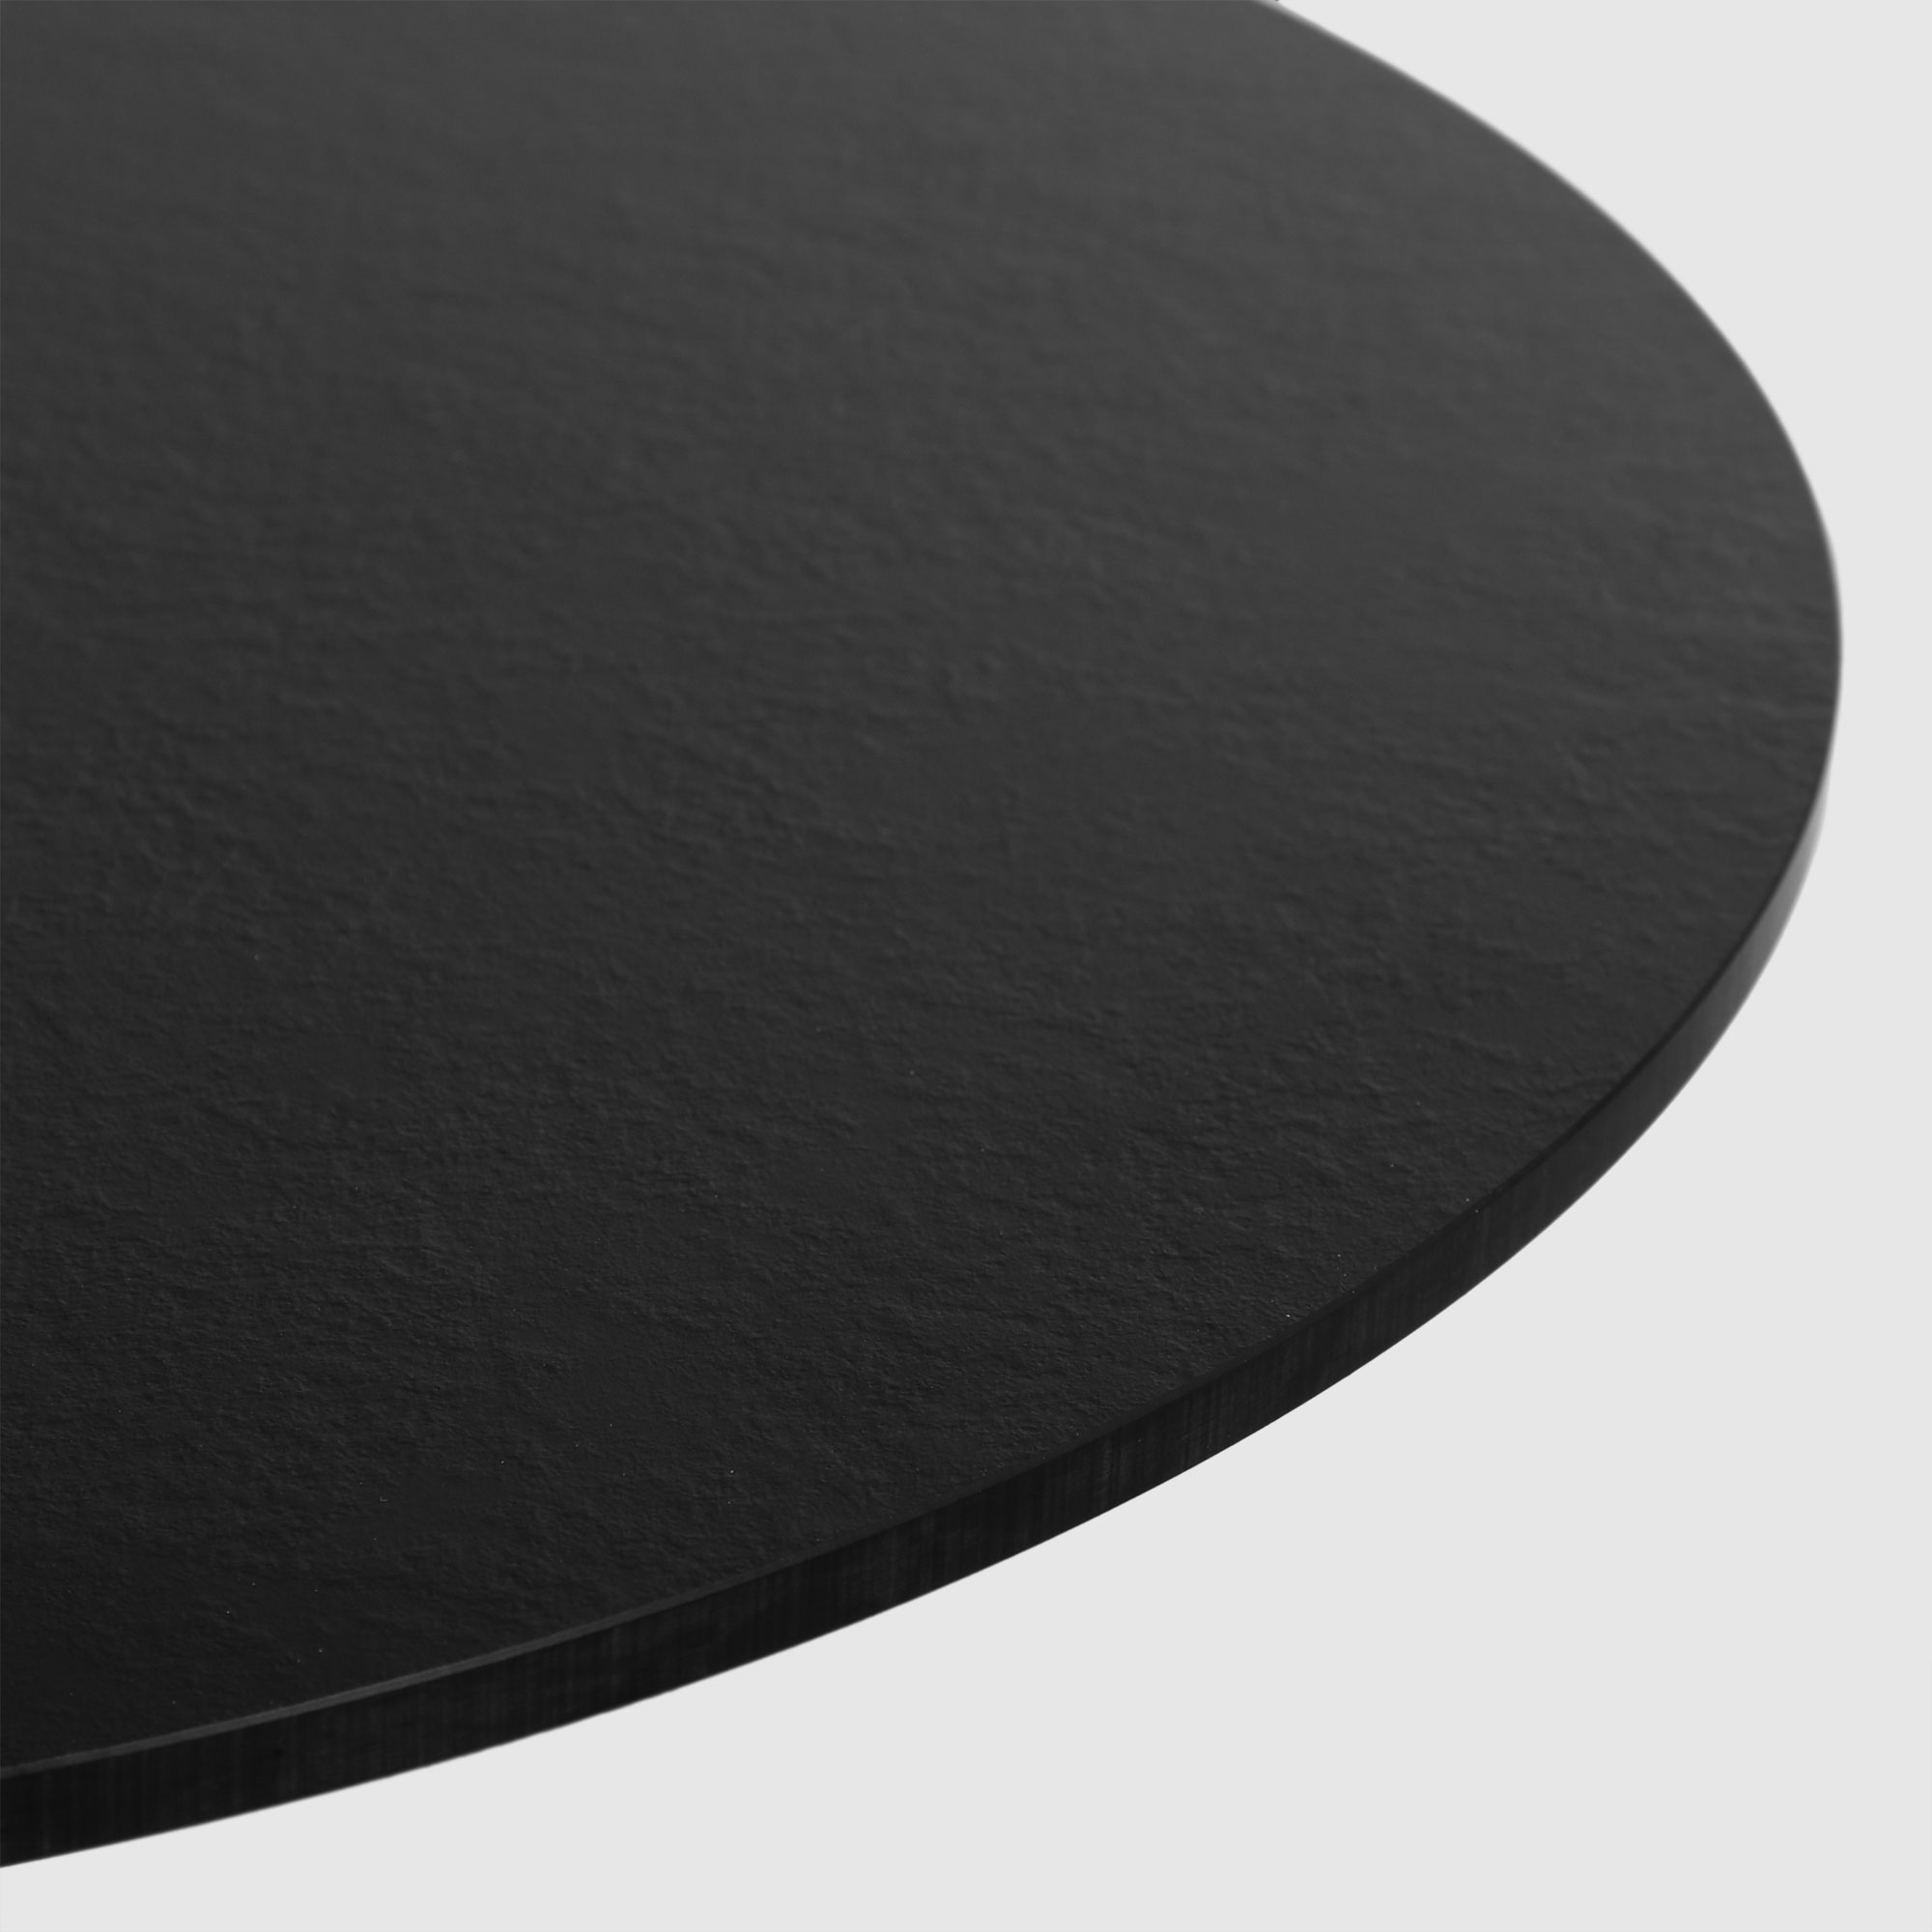 Стол Drigani Dakota round 60 см, цвет чёрный - фото 5